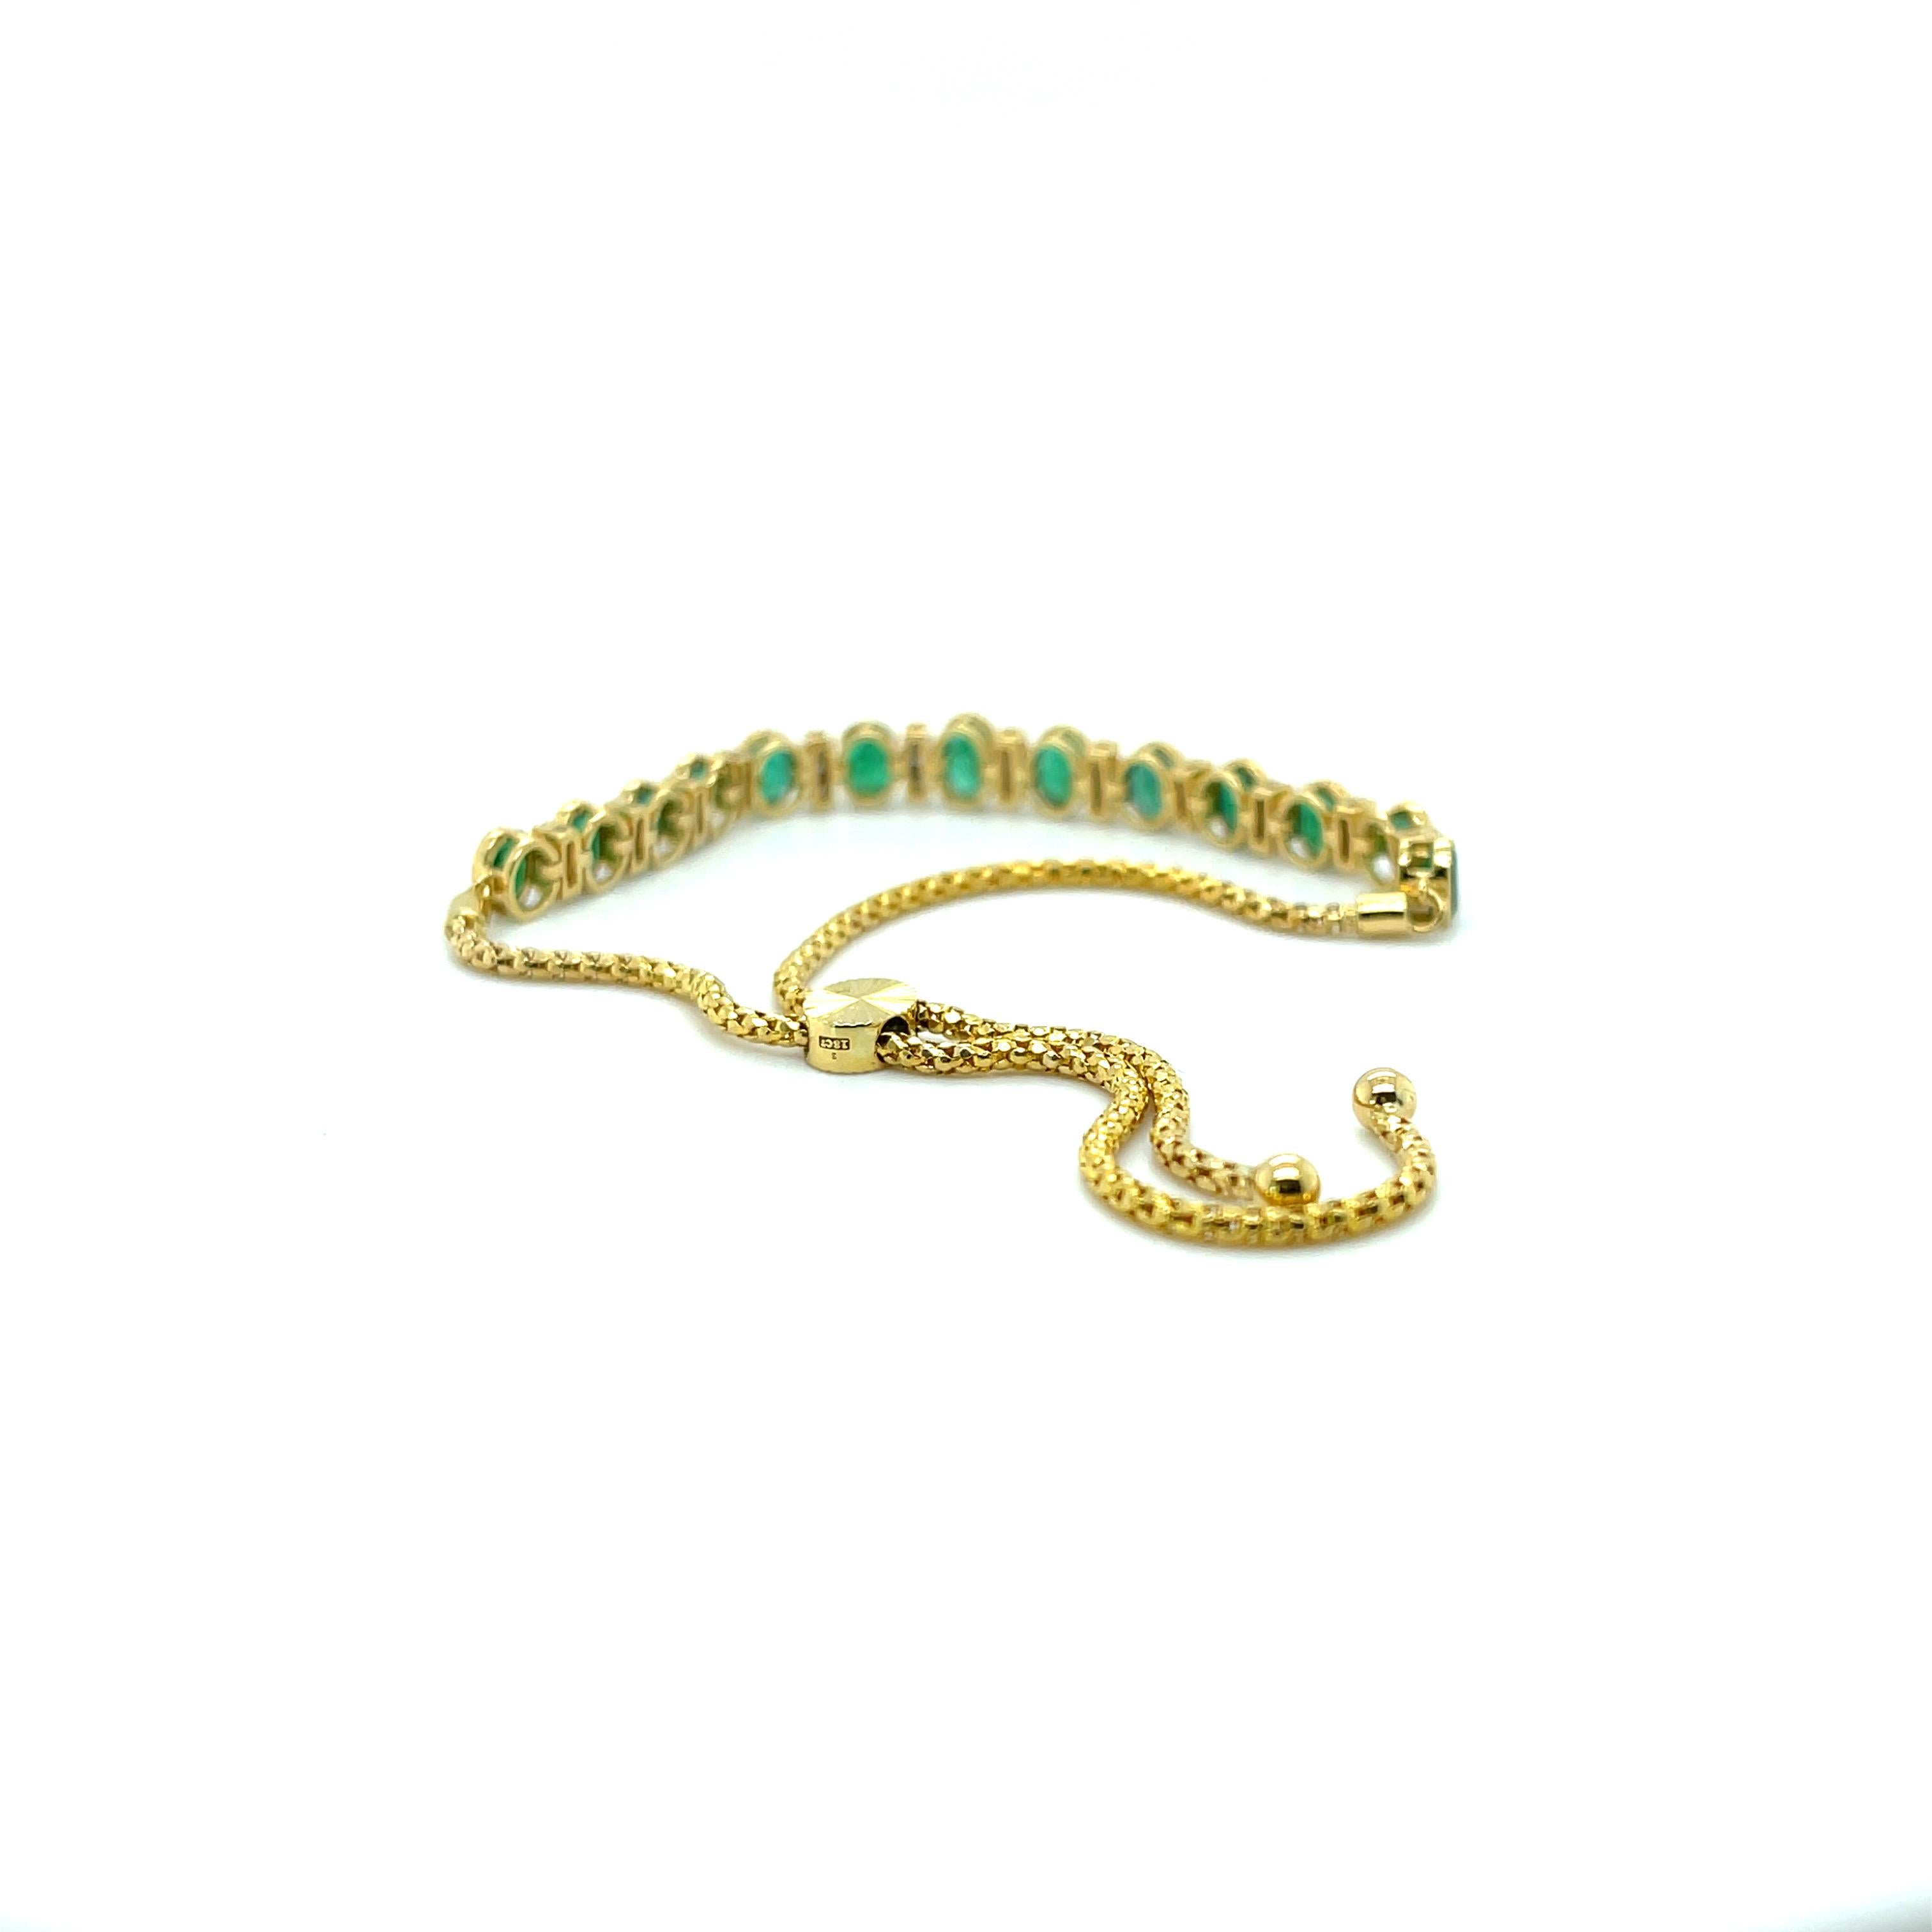 Natürliche Smaragde und Diamanten, wunderschön gearbeitet in achtzehn Karat Gelbgold, ergänzt durch ein atemberaubendes Design mit polierter Oberfläche. Expandierbares Armband für alle Handgelenksgrößen. 

Ein Damen - Armband aus 18 Karat Gelbgold,